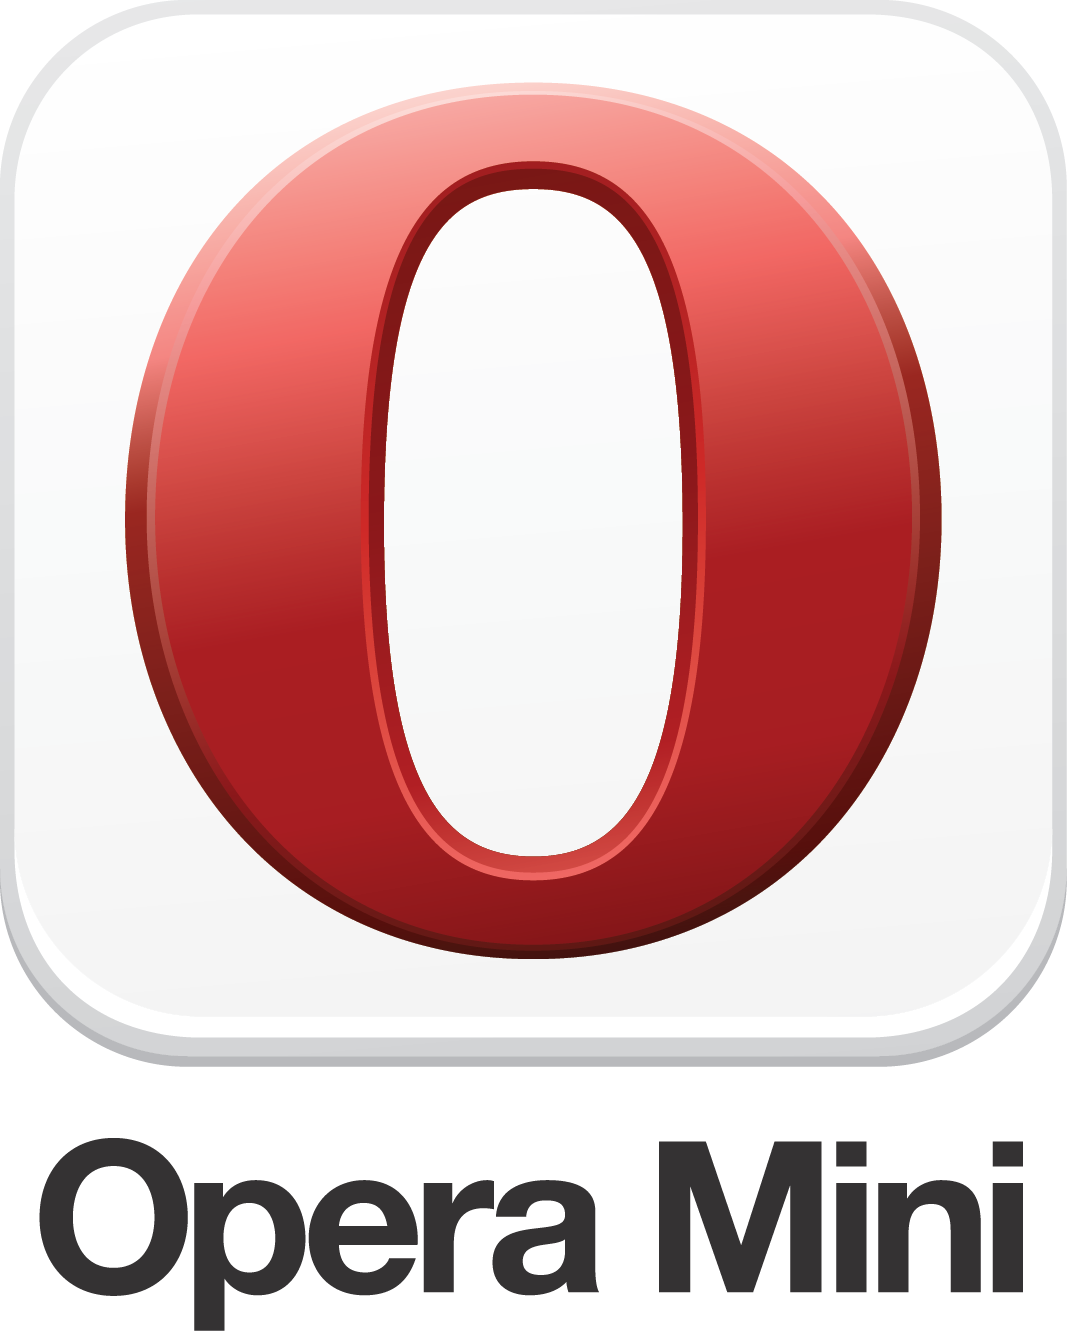 opera mini app for pc download